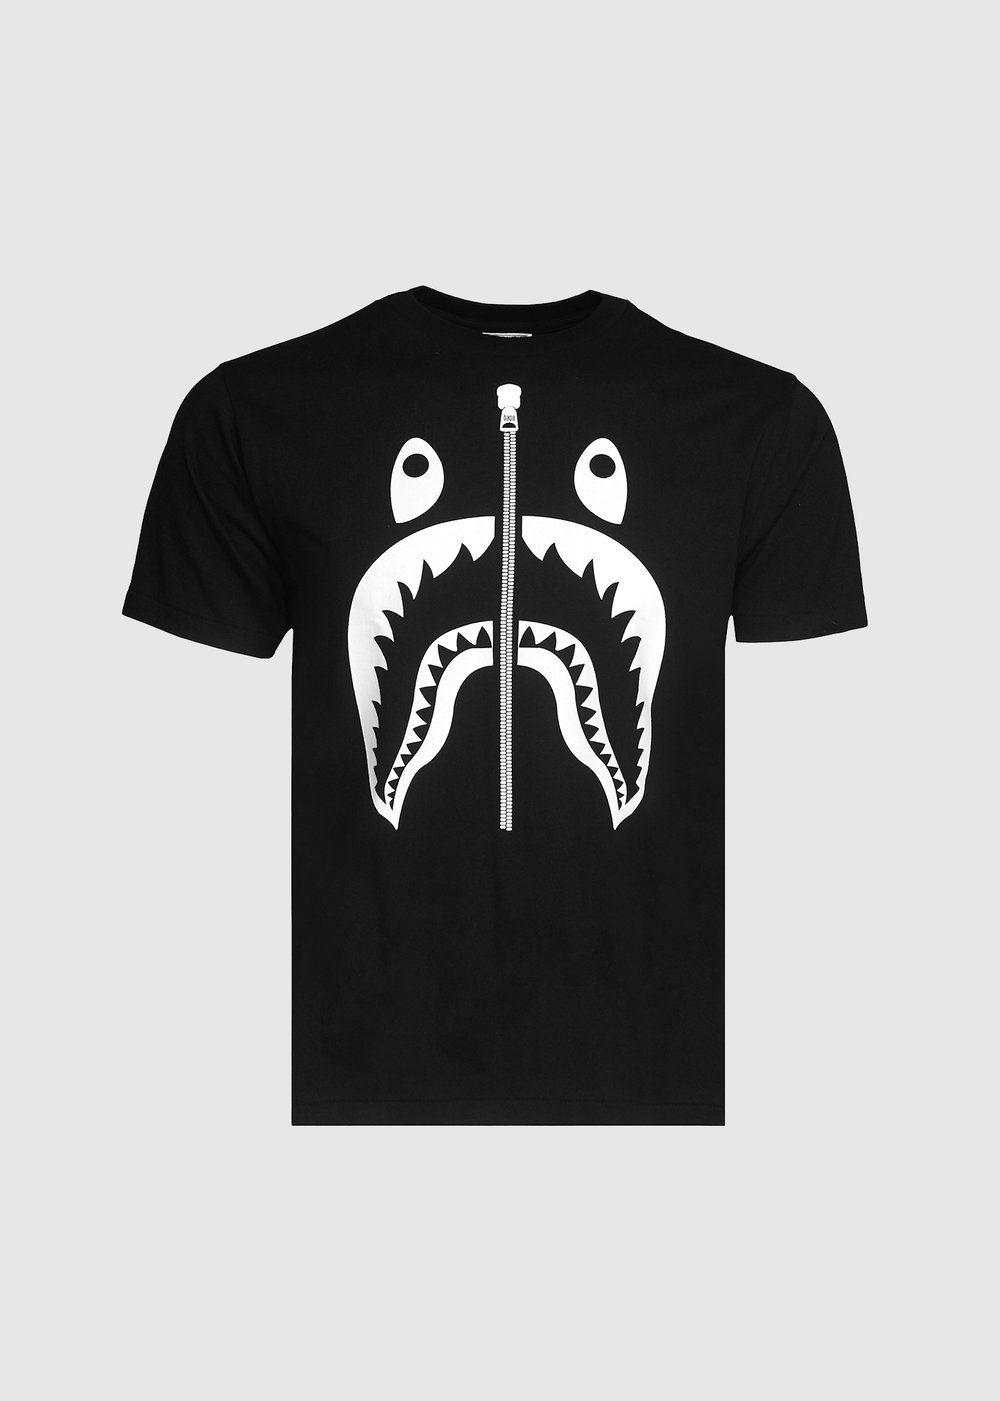 Black BAPE Shark Logo - Bape: Zipper Shark Tee [Black] – Social Status